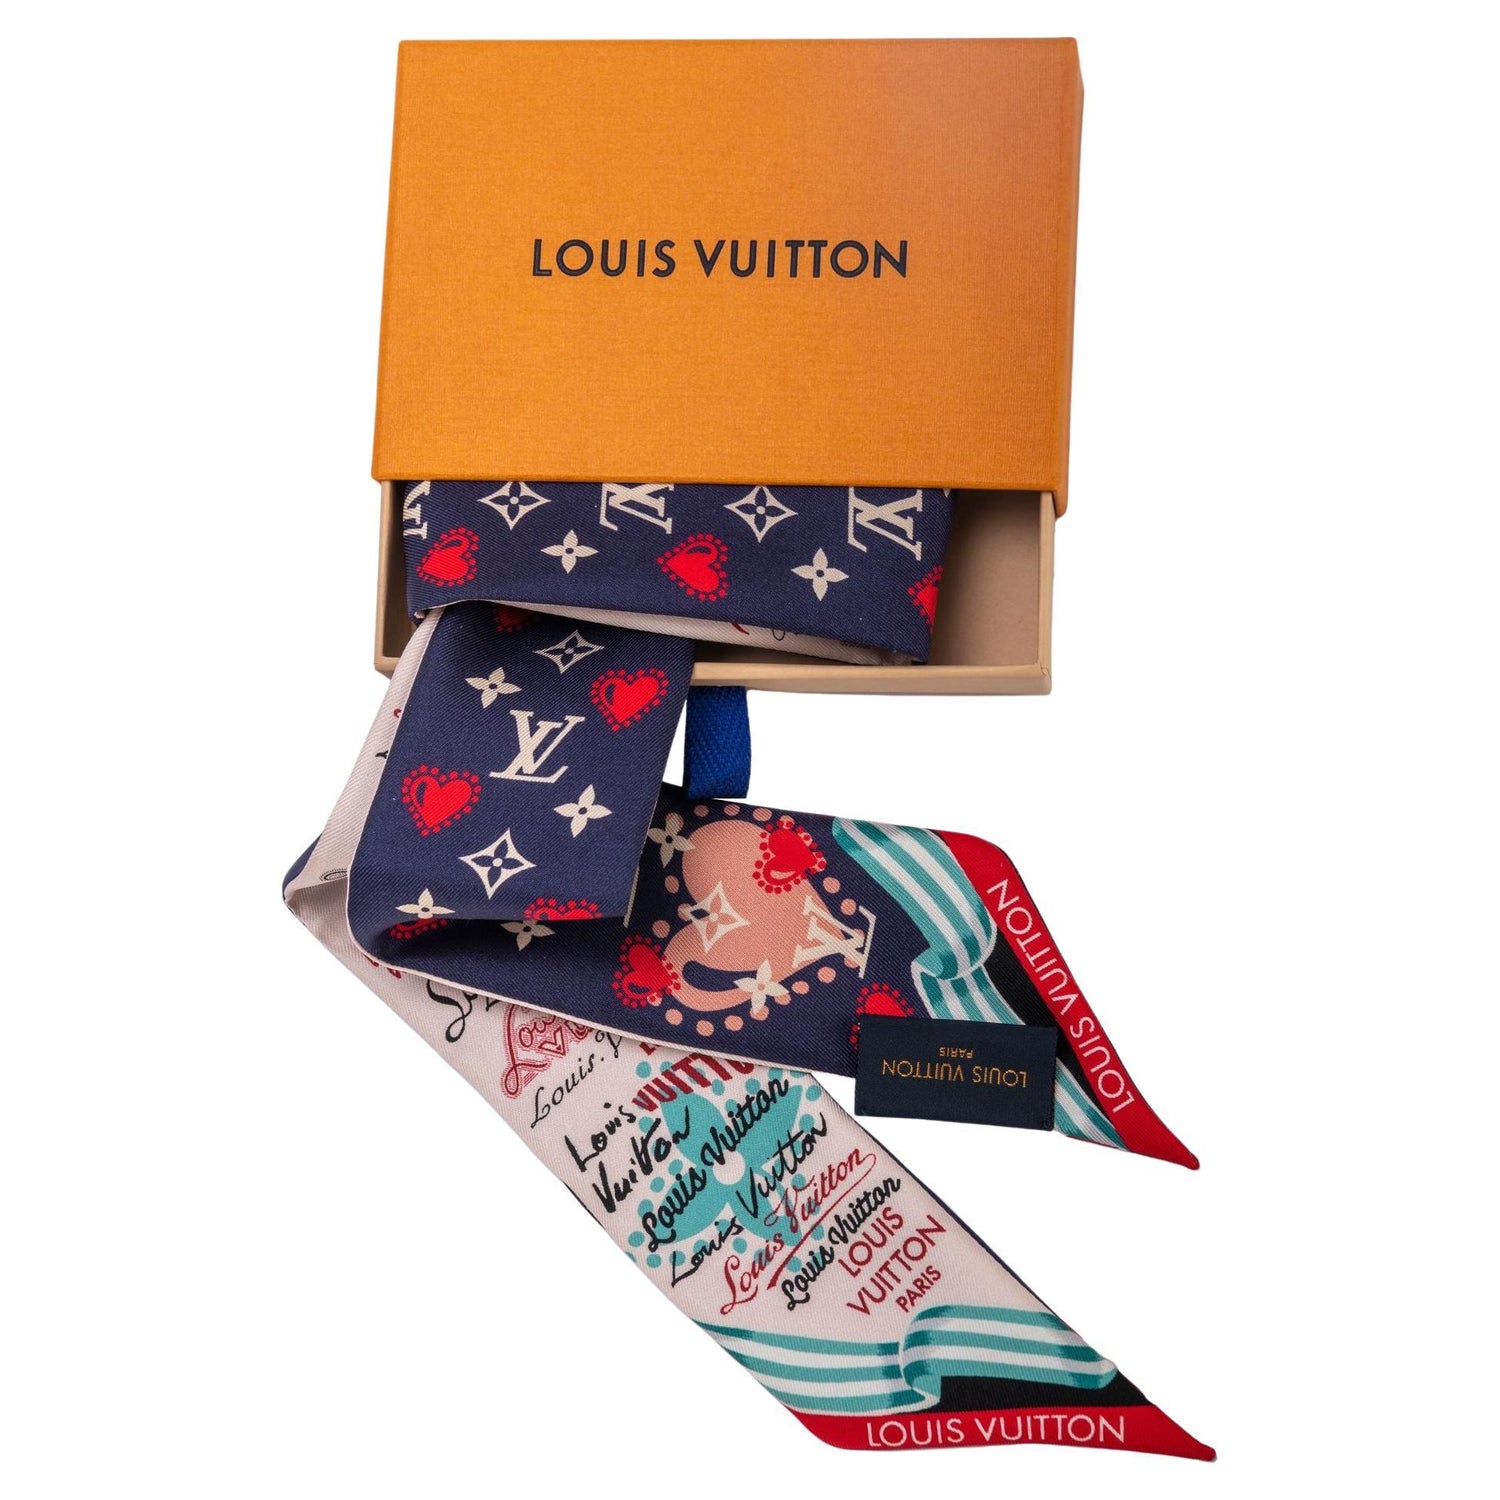 Louis Vuitton Wallets for sale in Ewa Beach, Hawaii